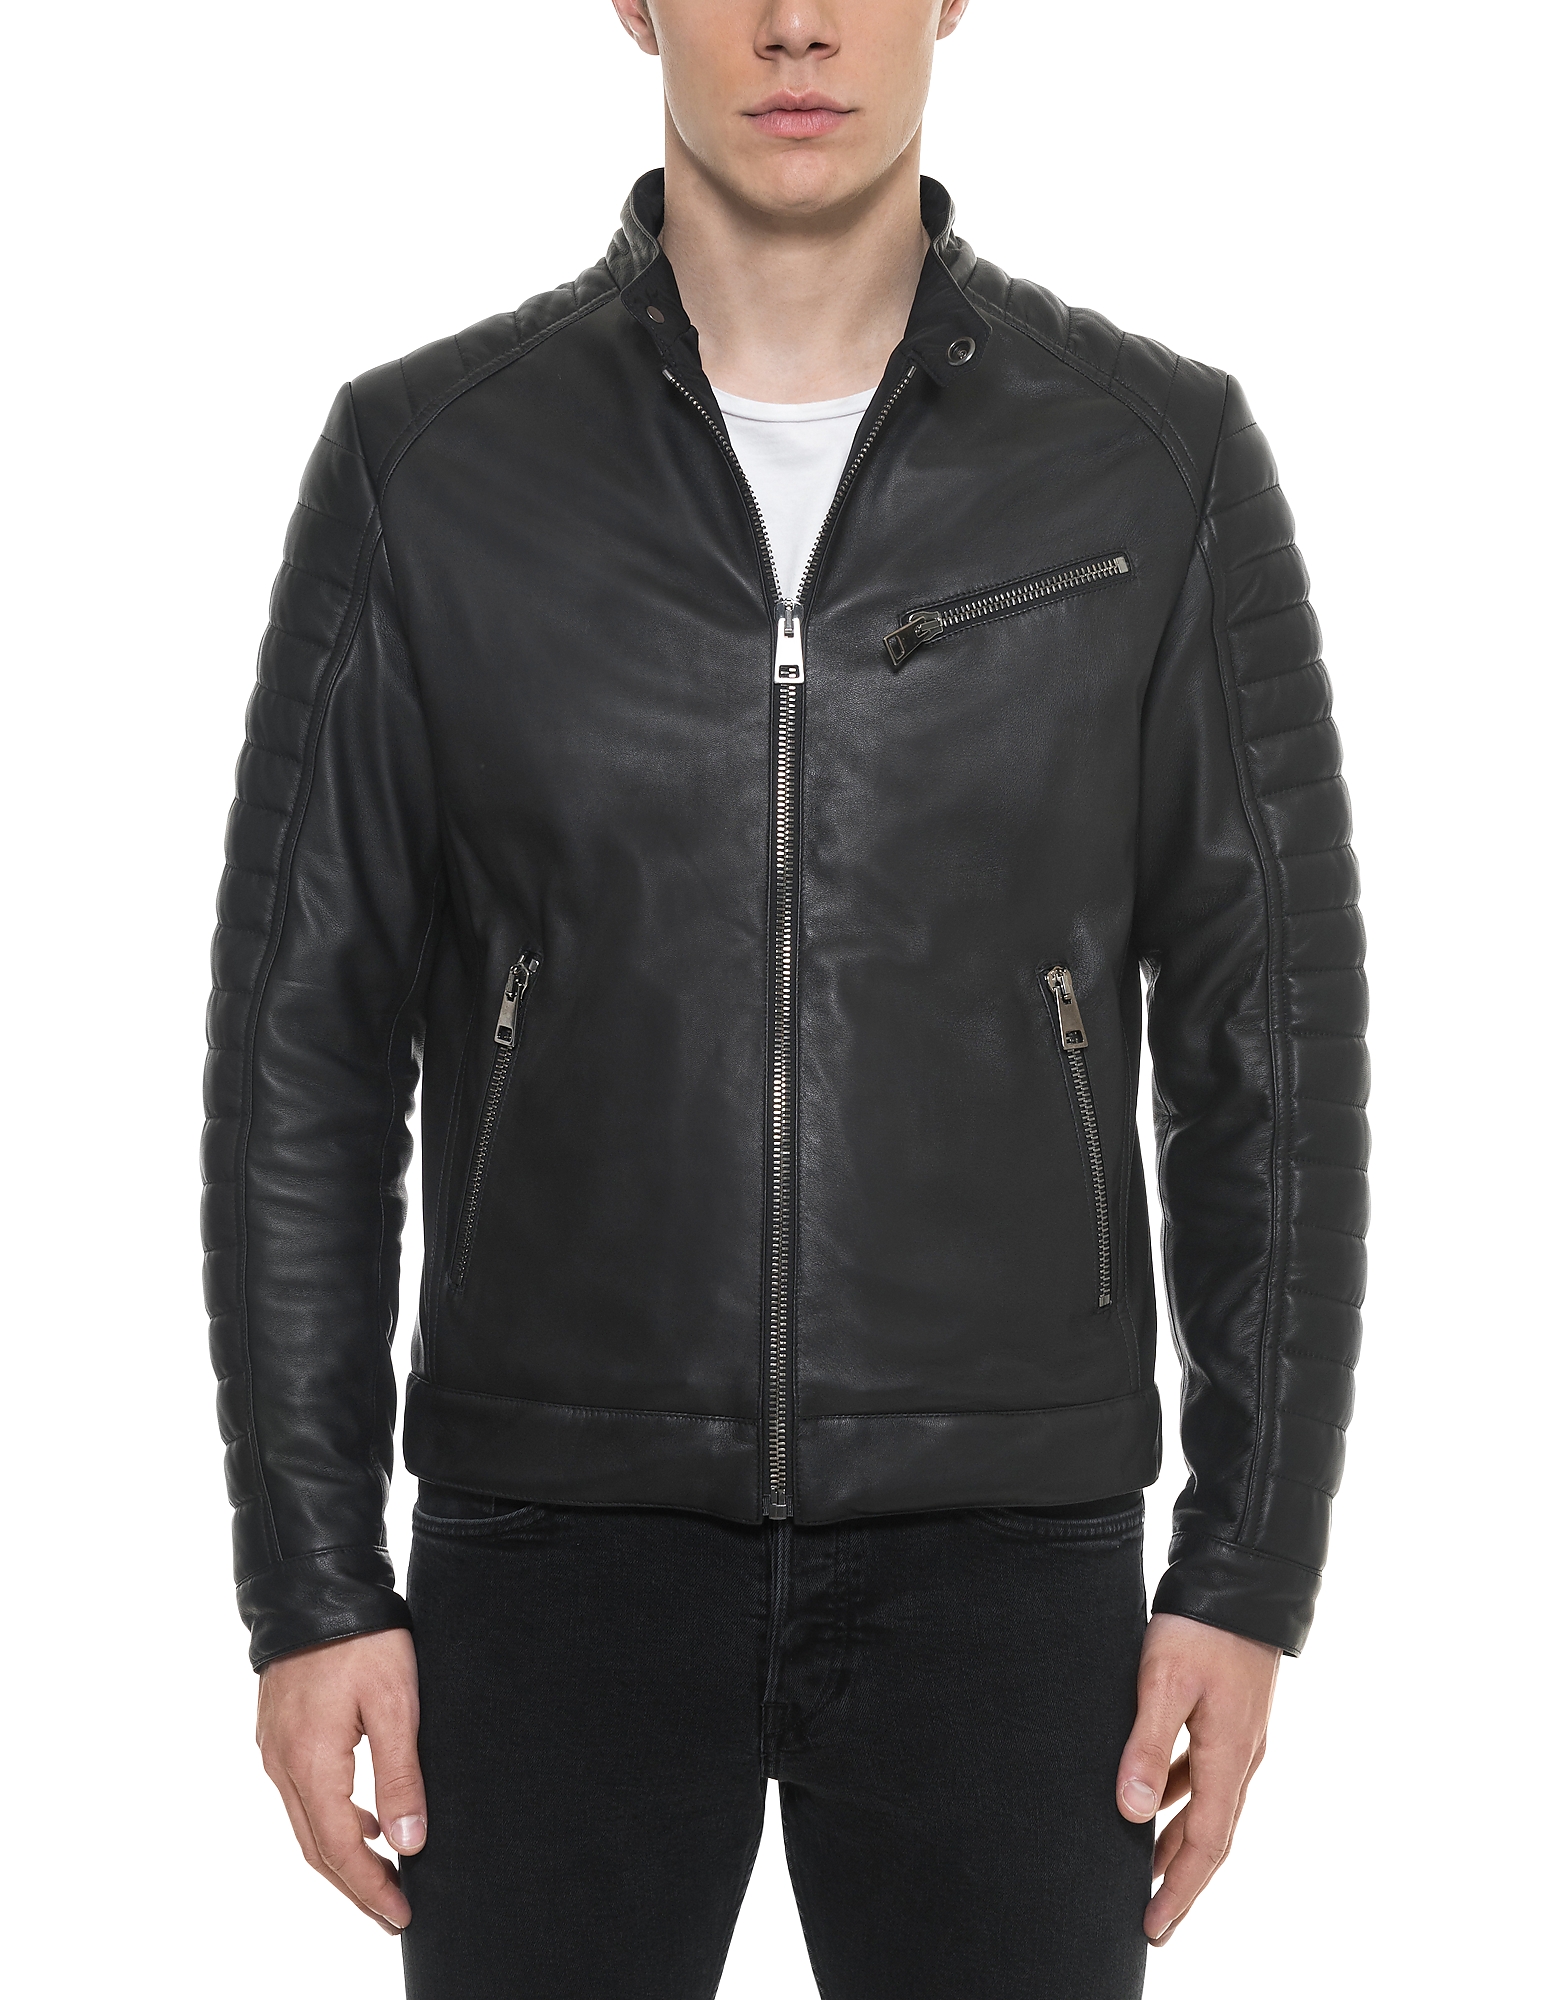 

Black Padded Leather Men's Biker Jacket